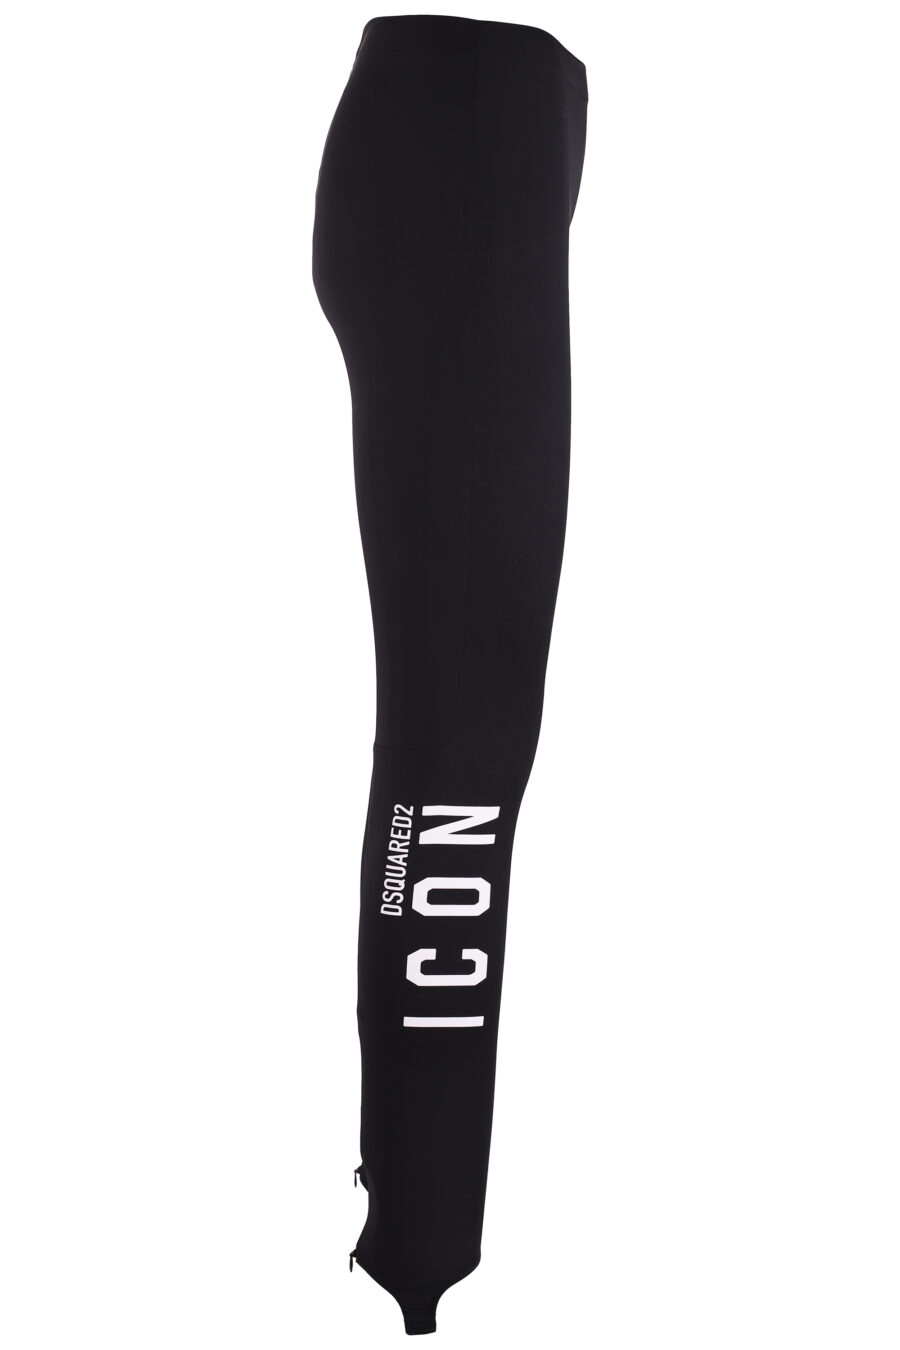 Leggins negros con logo "icon" vertical - IMG 3710